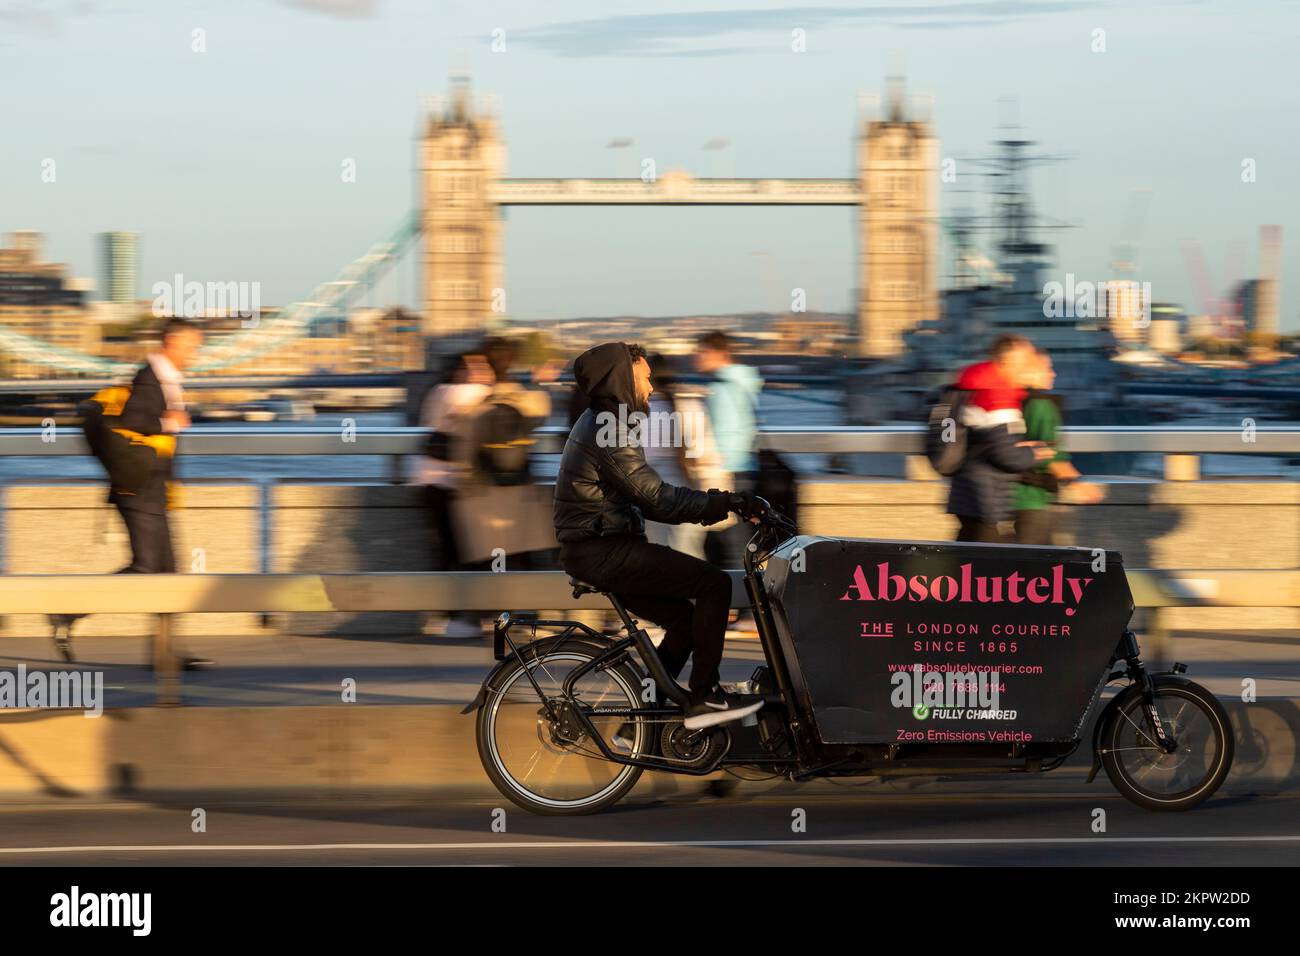 Un service de messagerie absolument cycliste qui traverse un vélo de transport urbain Arrow, London Bridge, Londres, Royaume-Uni. 28 octobre 2022 Banque D'Images